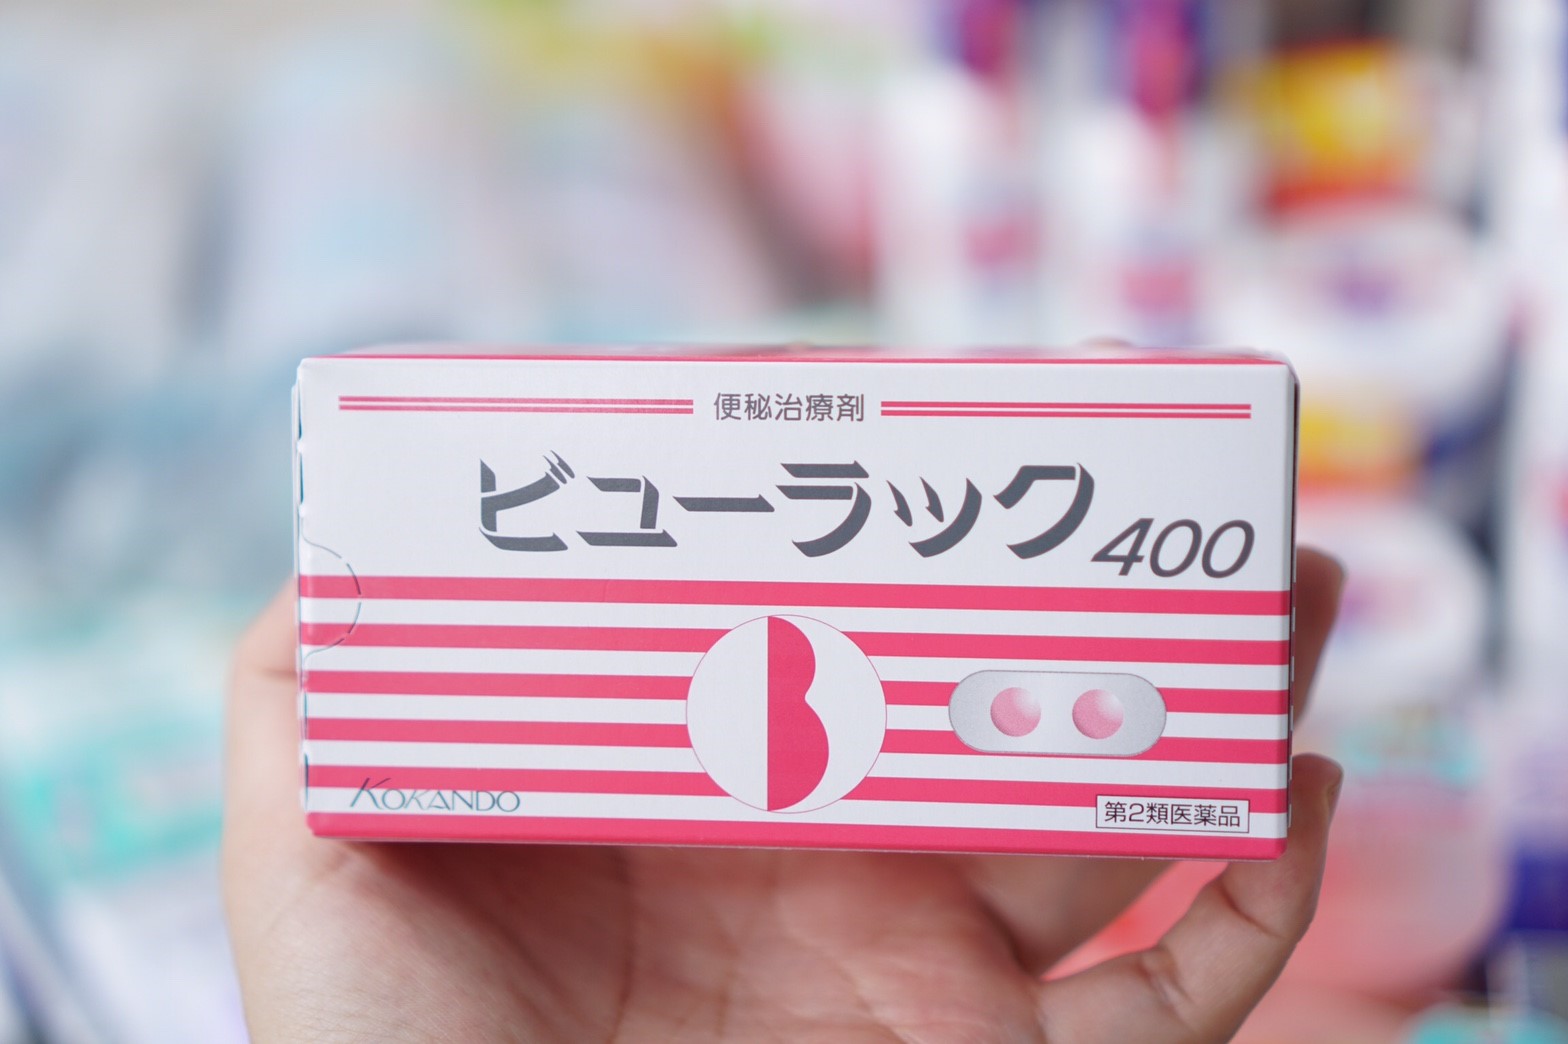 Byurakku Kokando ไฟเบอร์ที่ดีที่สุดจากประเทศญี่ปุ่น เหมาะสำหรับผู้ที่มีปัญหาการขับถ่าย ทำให้หน้าท้องแบนราบ ลดการติดเชื้อจากสิว ทำให้สิวแห้ง (1 กล่อง x 400 เม็ด)